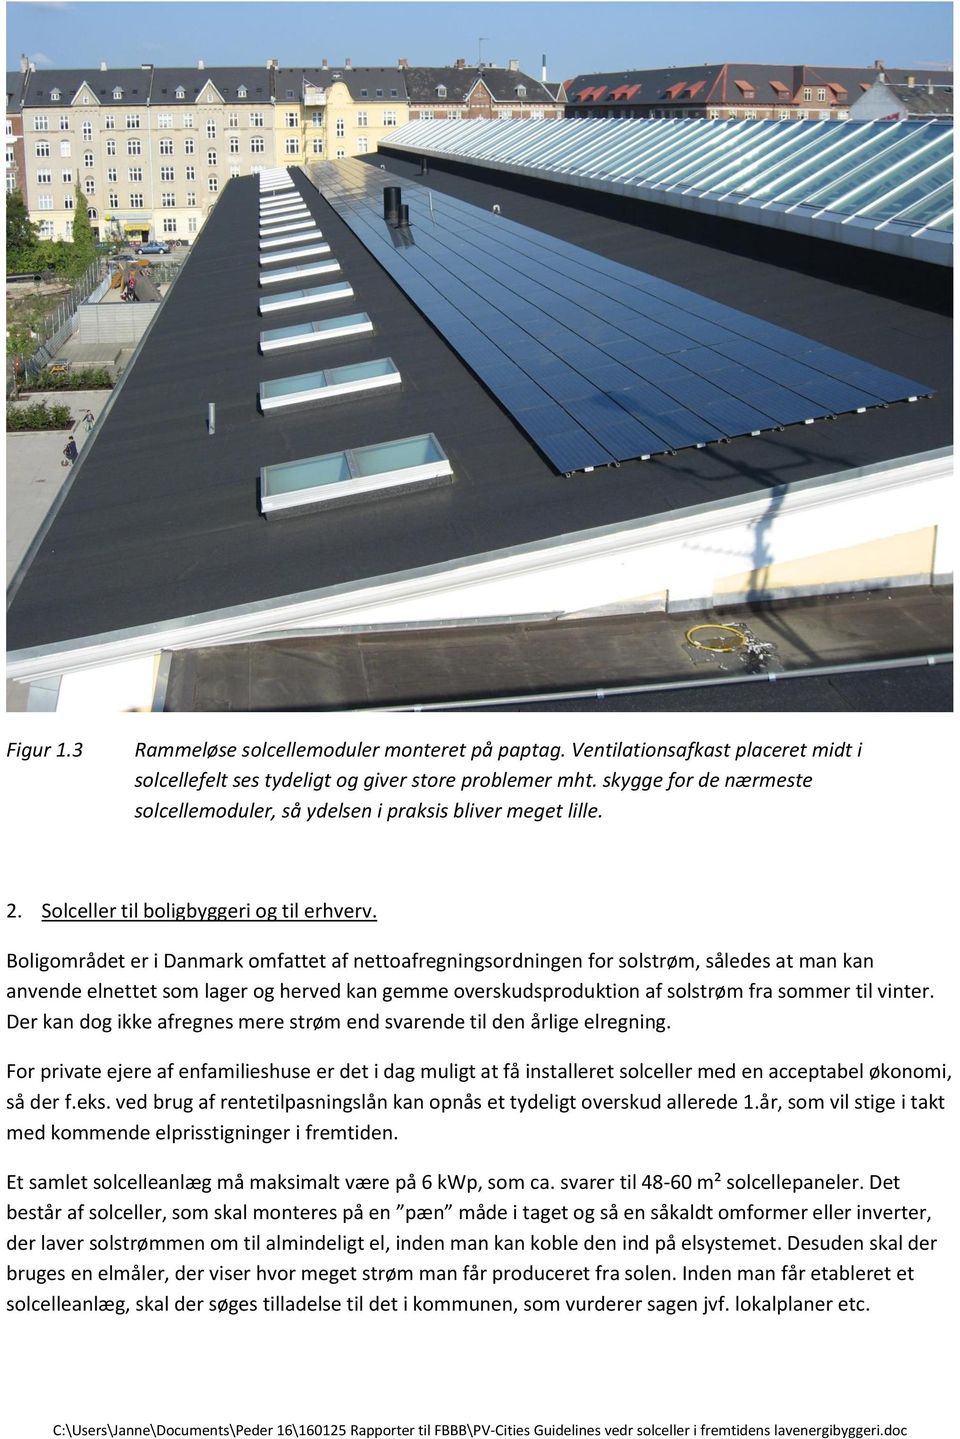 Boligområdet er i Danmark omfattet af nettoafregningsordningen for solstrøm, således at man kan anvende elnettet som lager og herved kan gemme overskudsproduktion af solstrøm fra sommer til vinter.